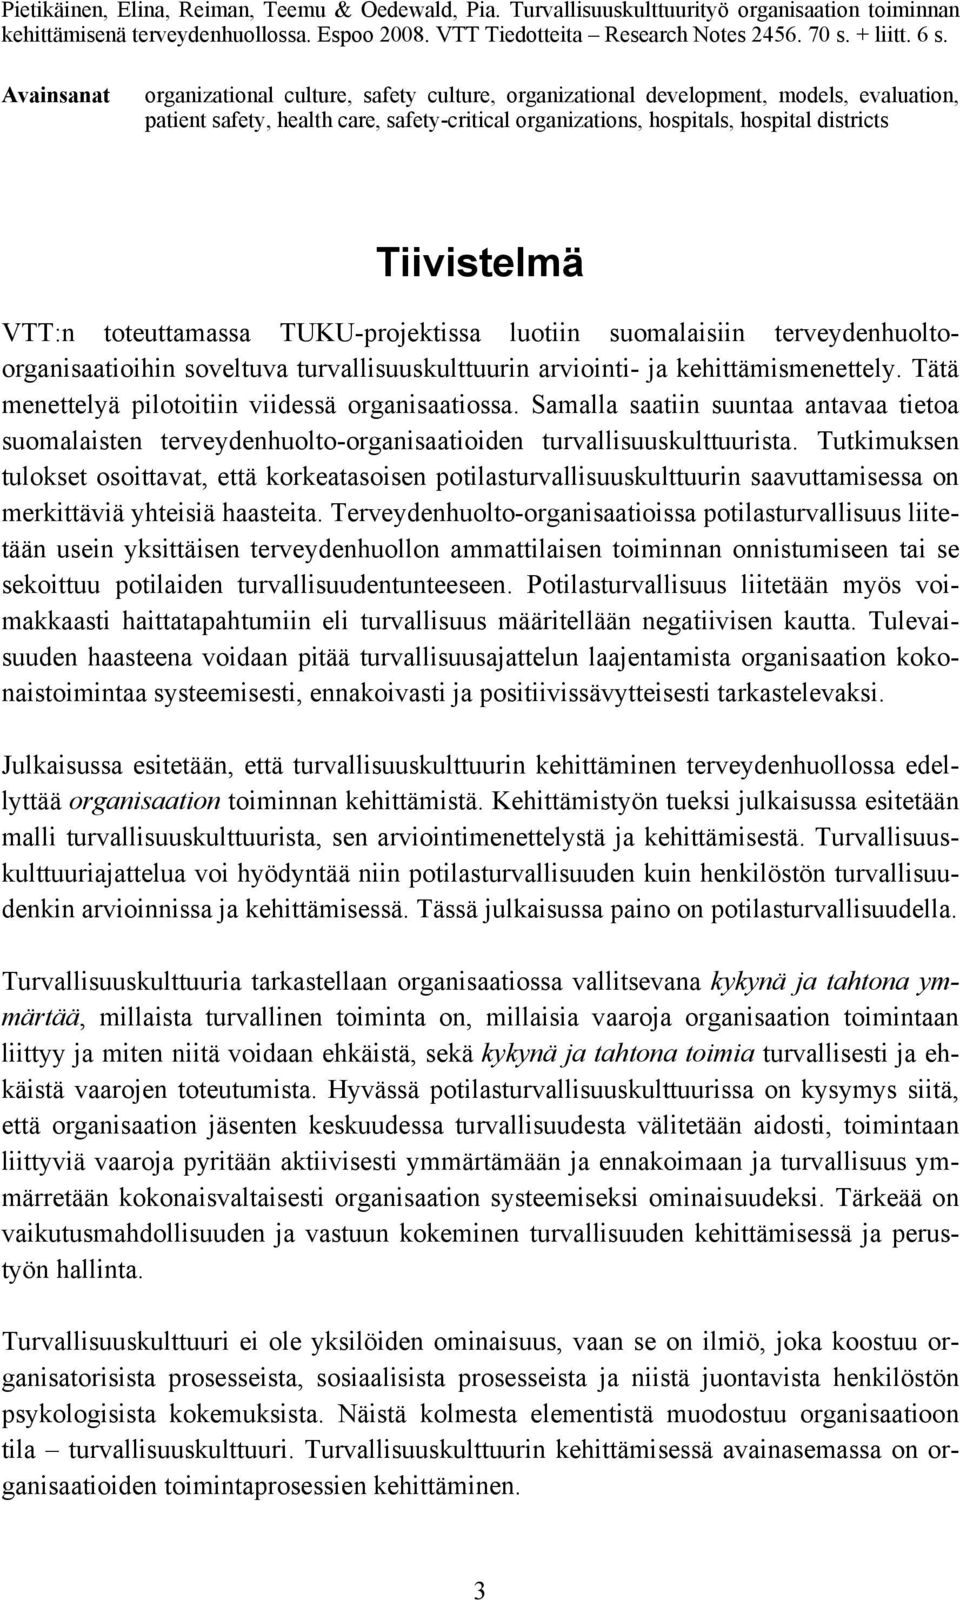 Tiivistelmä VTT:n toteuttamassa TUKU-projektissa luotiin suomalaisiin terveydenhuoltoorganisaatioihin soveltuva turvallisuuskulttuurin arviointi- ja kehittämismenettely.